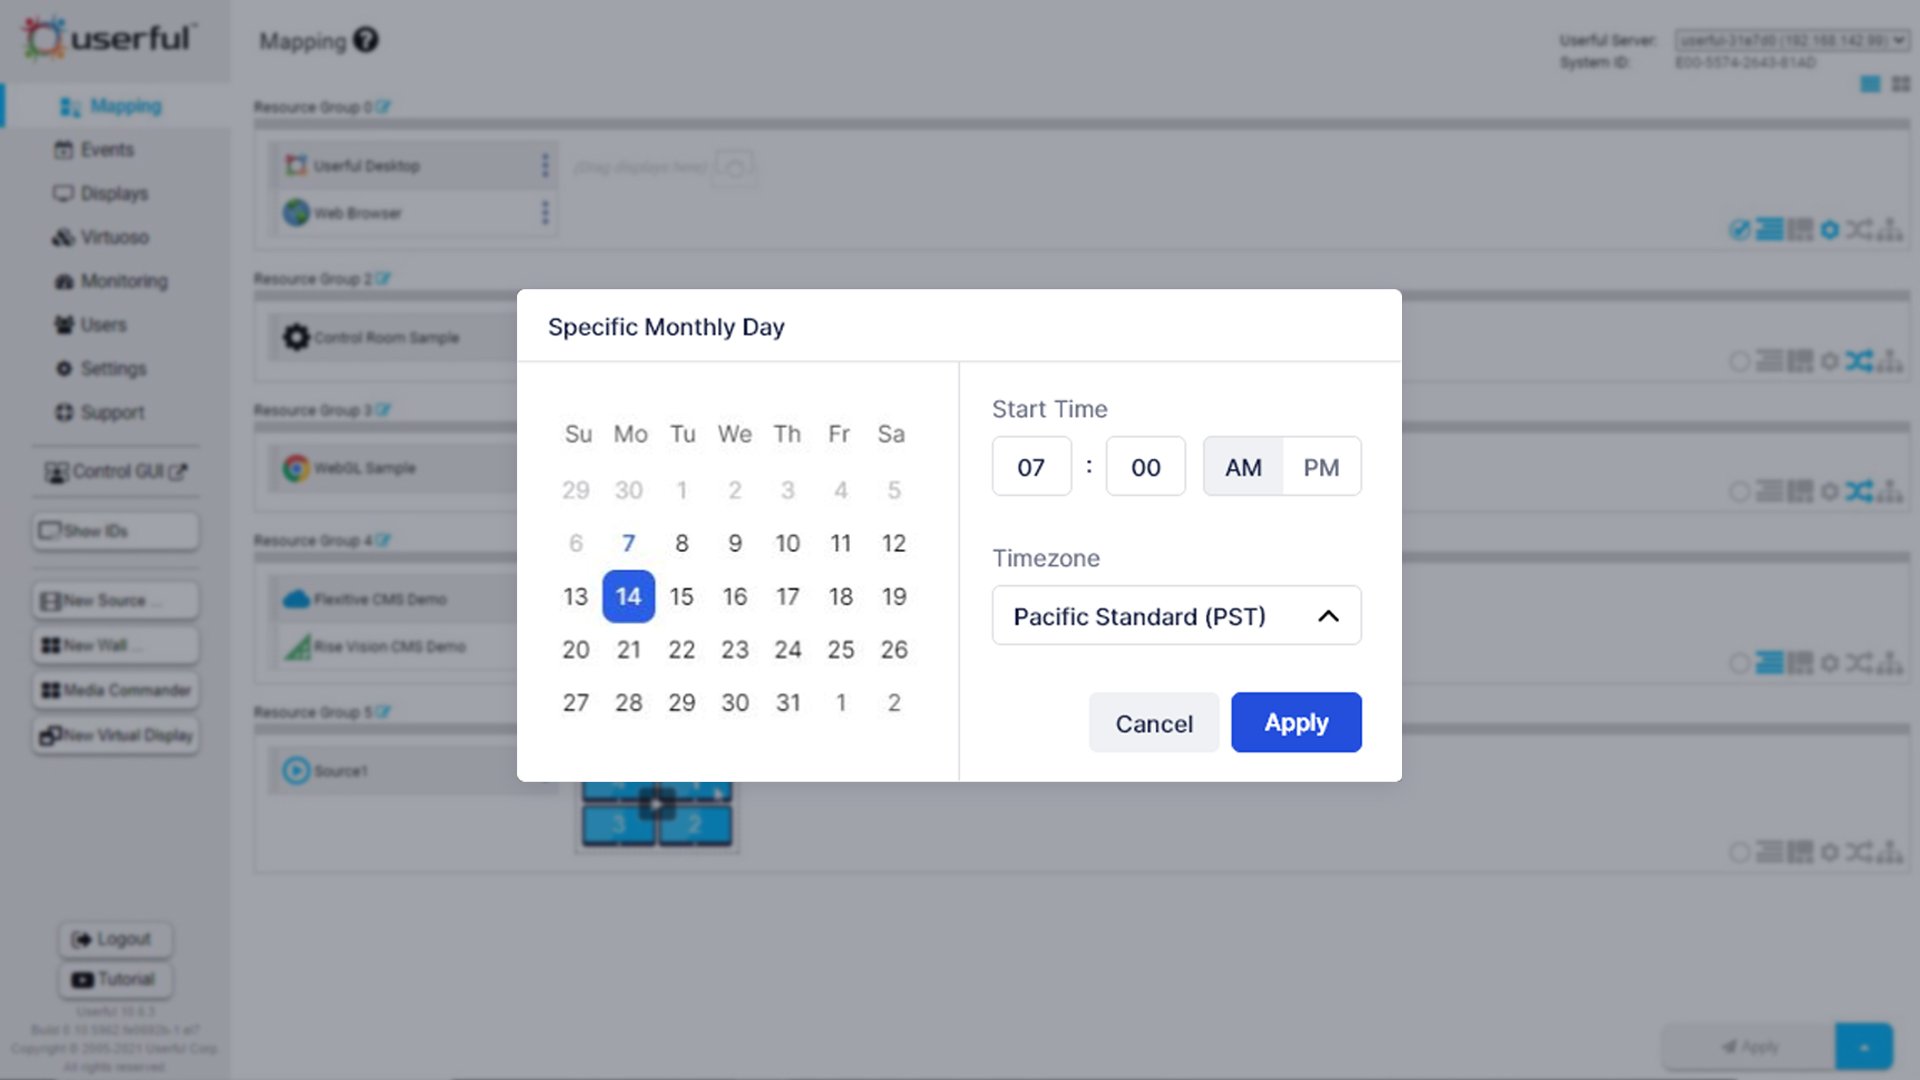 安排会议的日历用户界面的例子